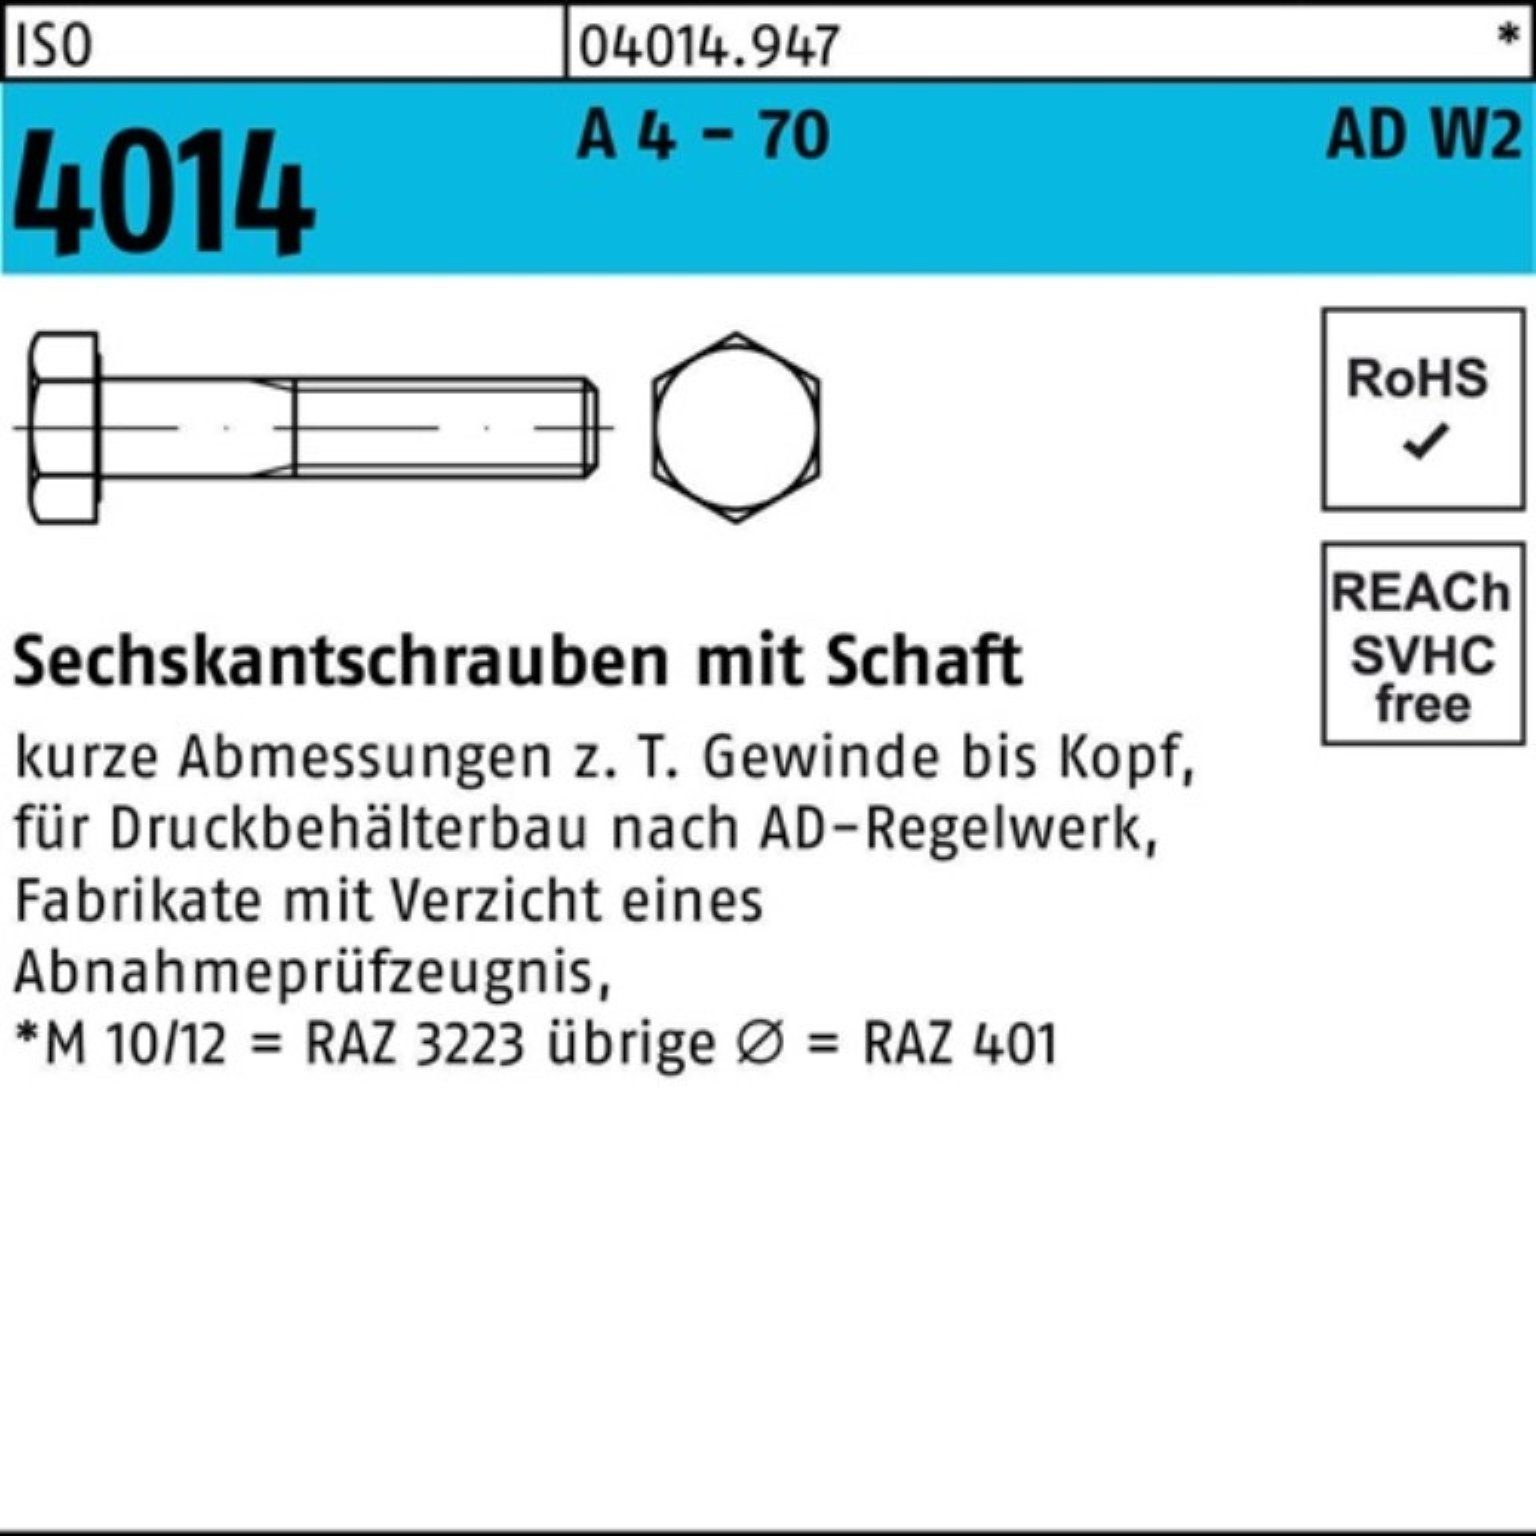 Schaft Sechskantschraube A 4 1 AD-W2 Sechskantschraube 4014 100er Pack - M24x ISO Bufab 120 70